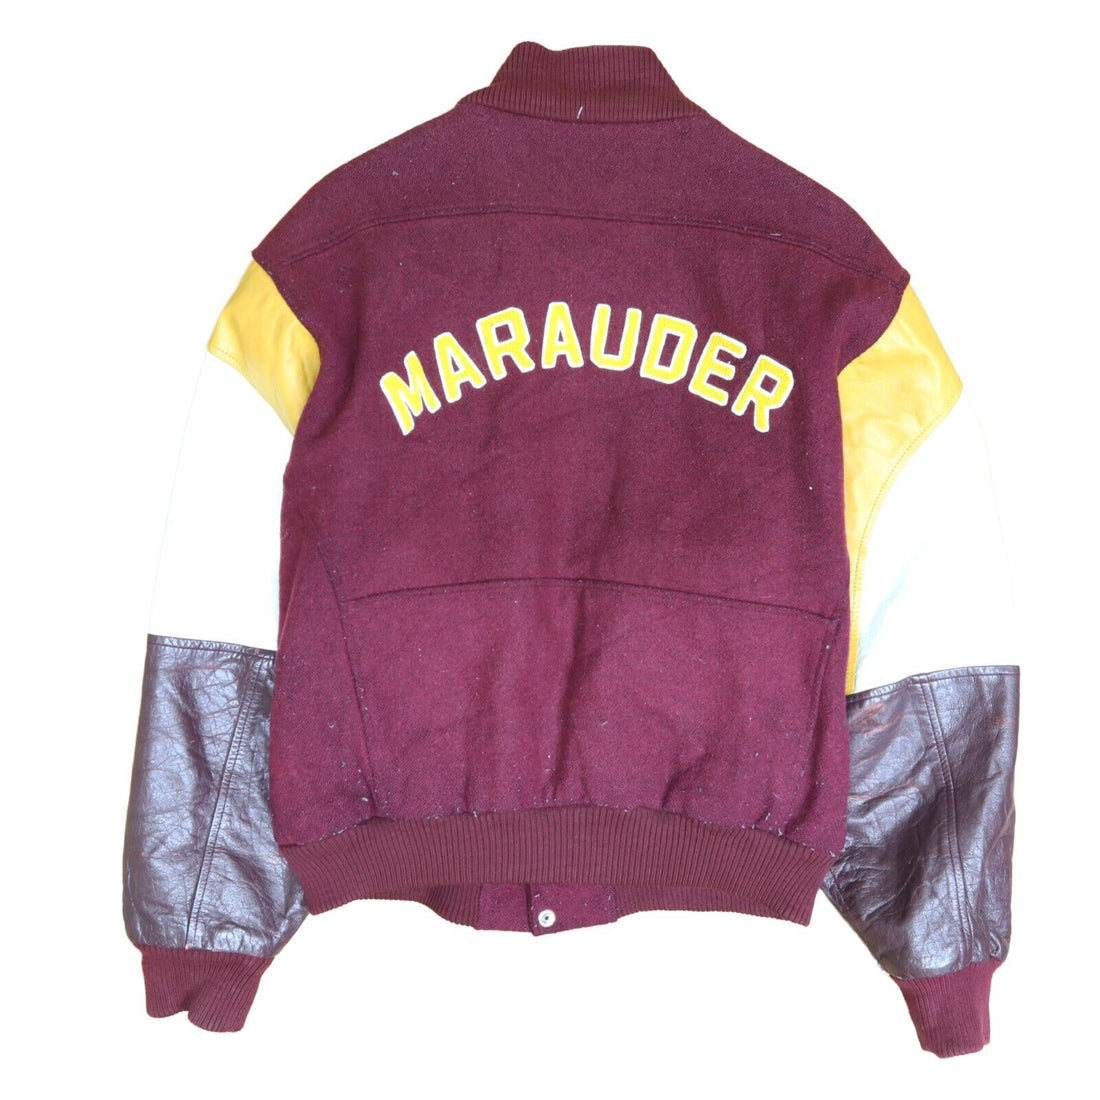 Vintage Merivale Marauders Leather Wool Varsity Bomber Jacket Size Medium